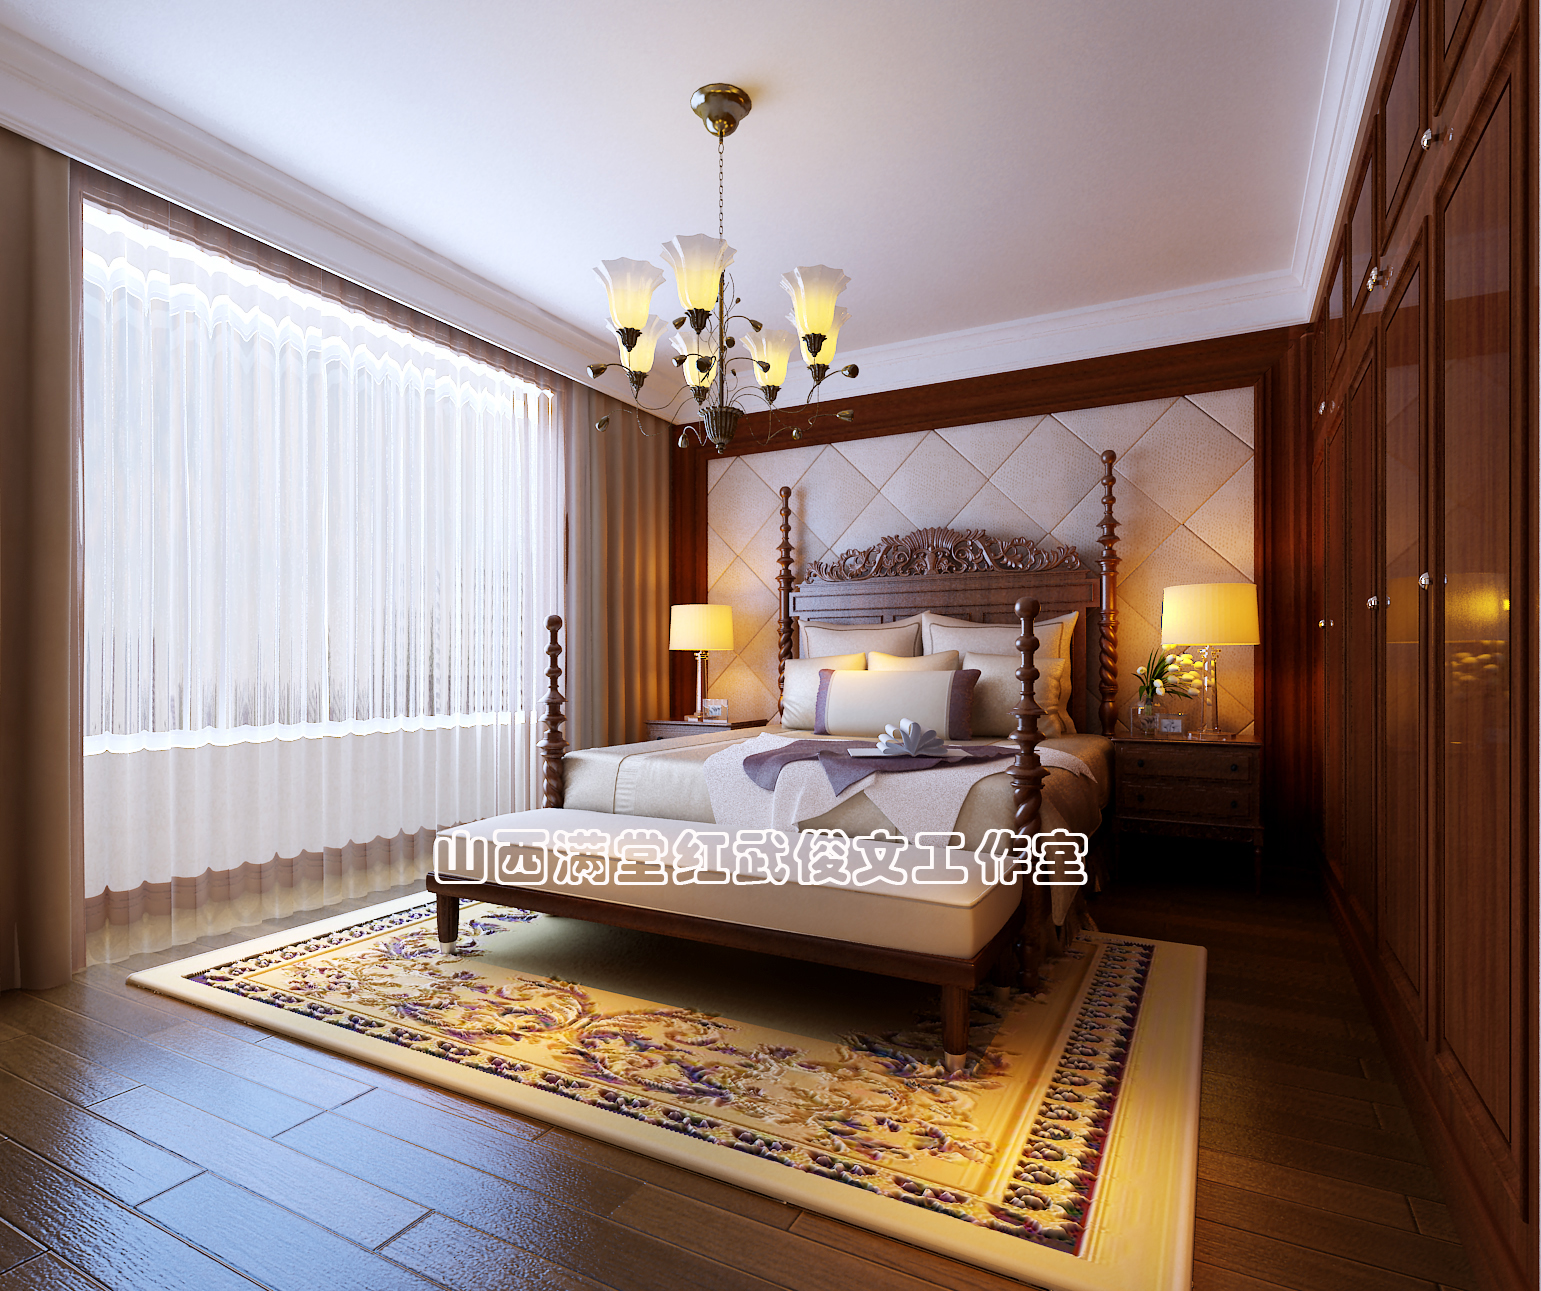 简约 欧式 卧室图片来自满堂红设计师武俊文在长治别墅的分享